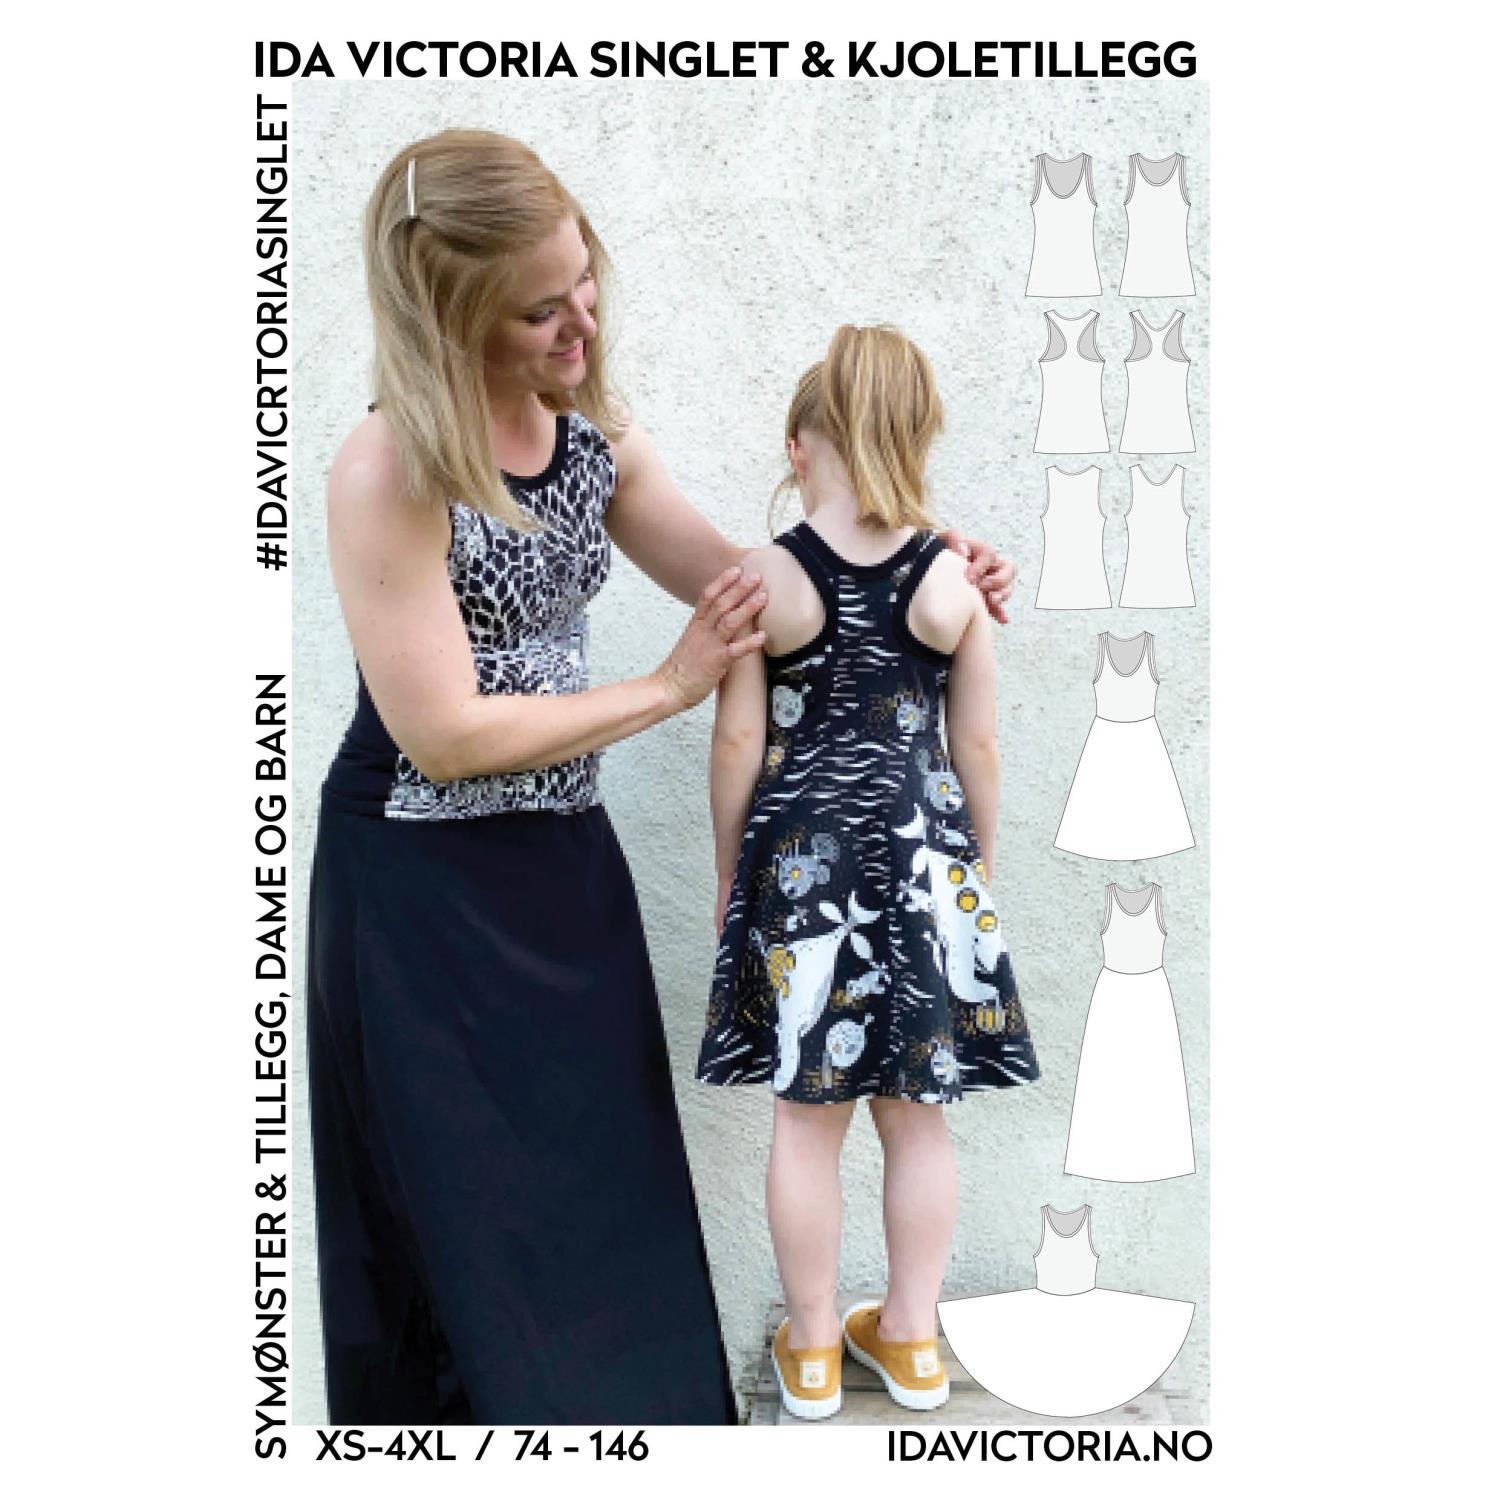 Ida Victoria - Singlet & kjoletillegg - Barn og dame